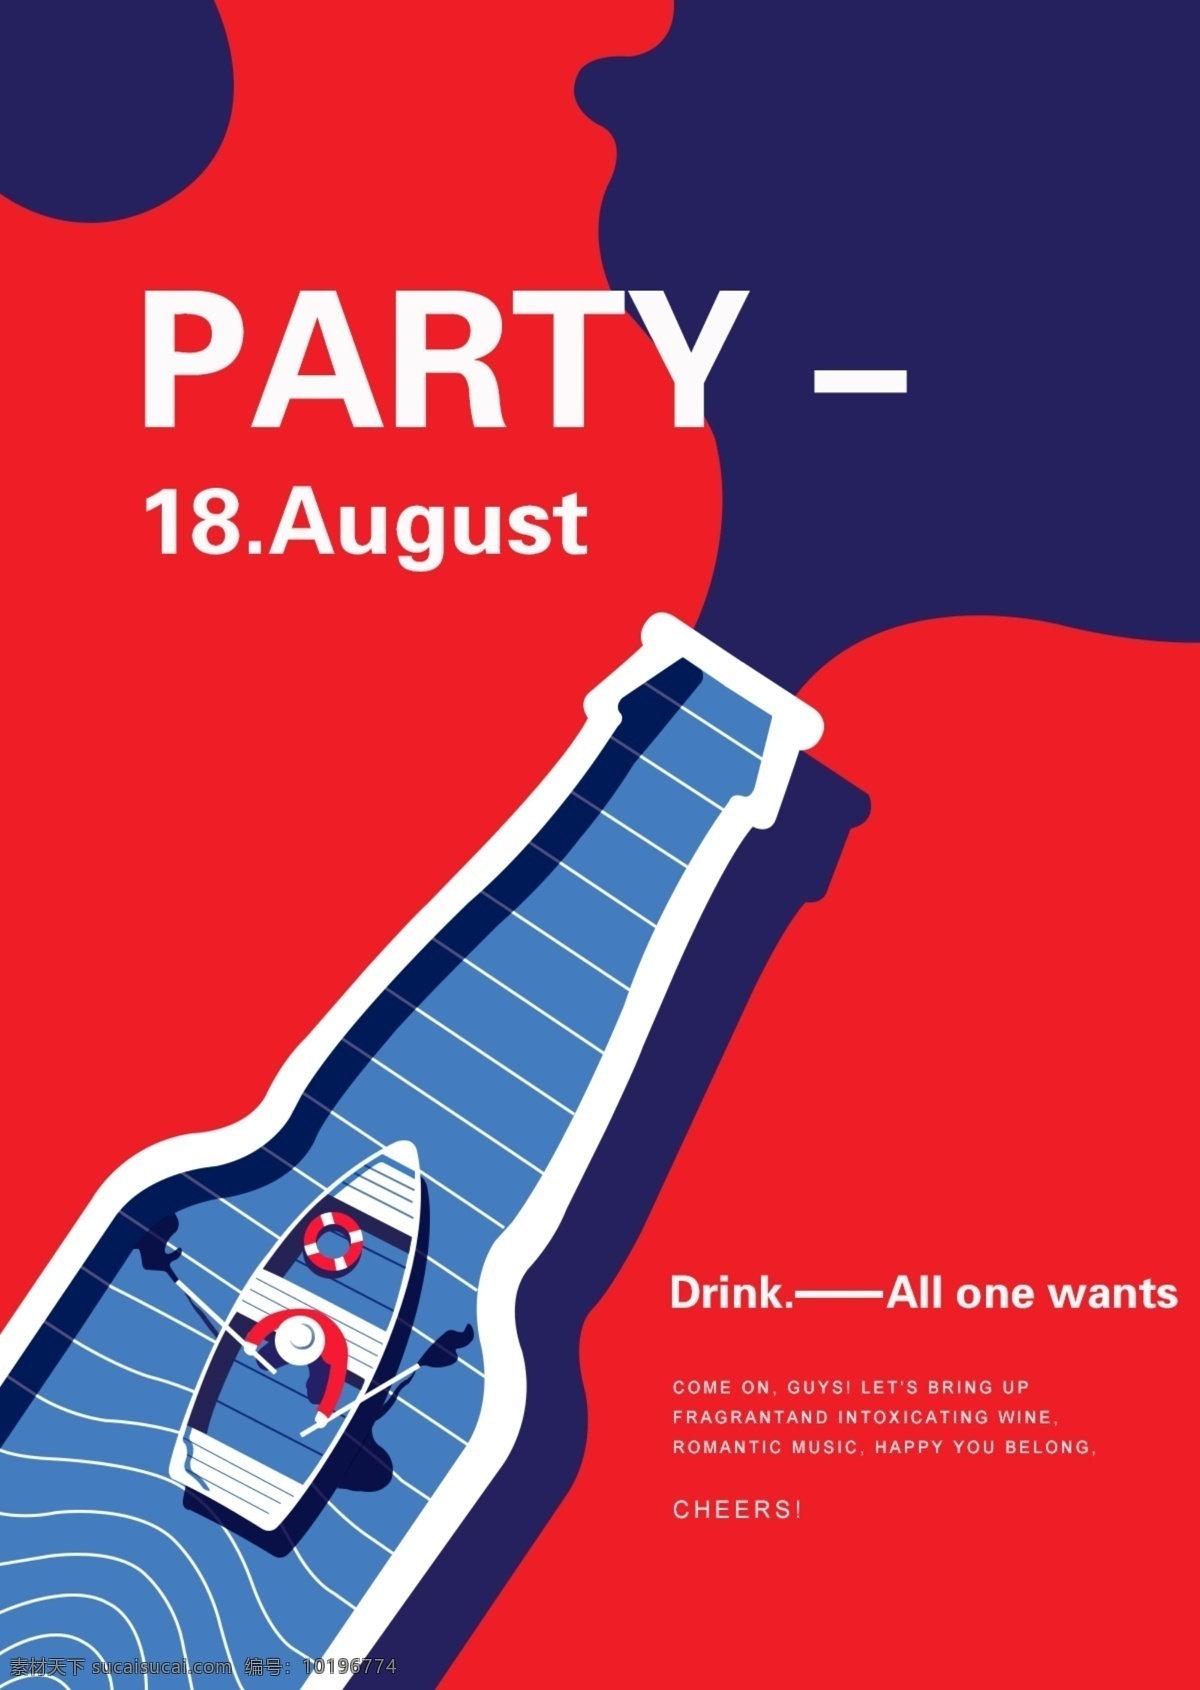 啤酒节 party 宣传 广告 宣传海报 邀请函